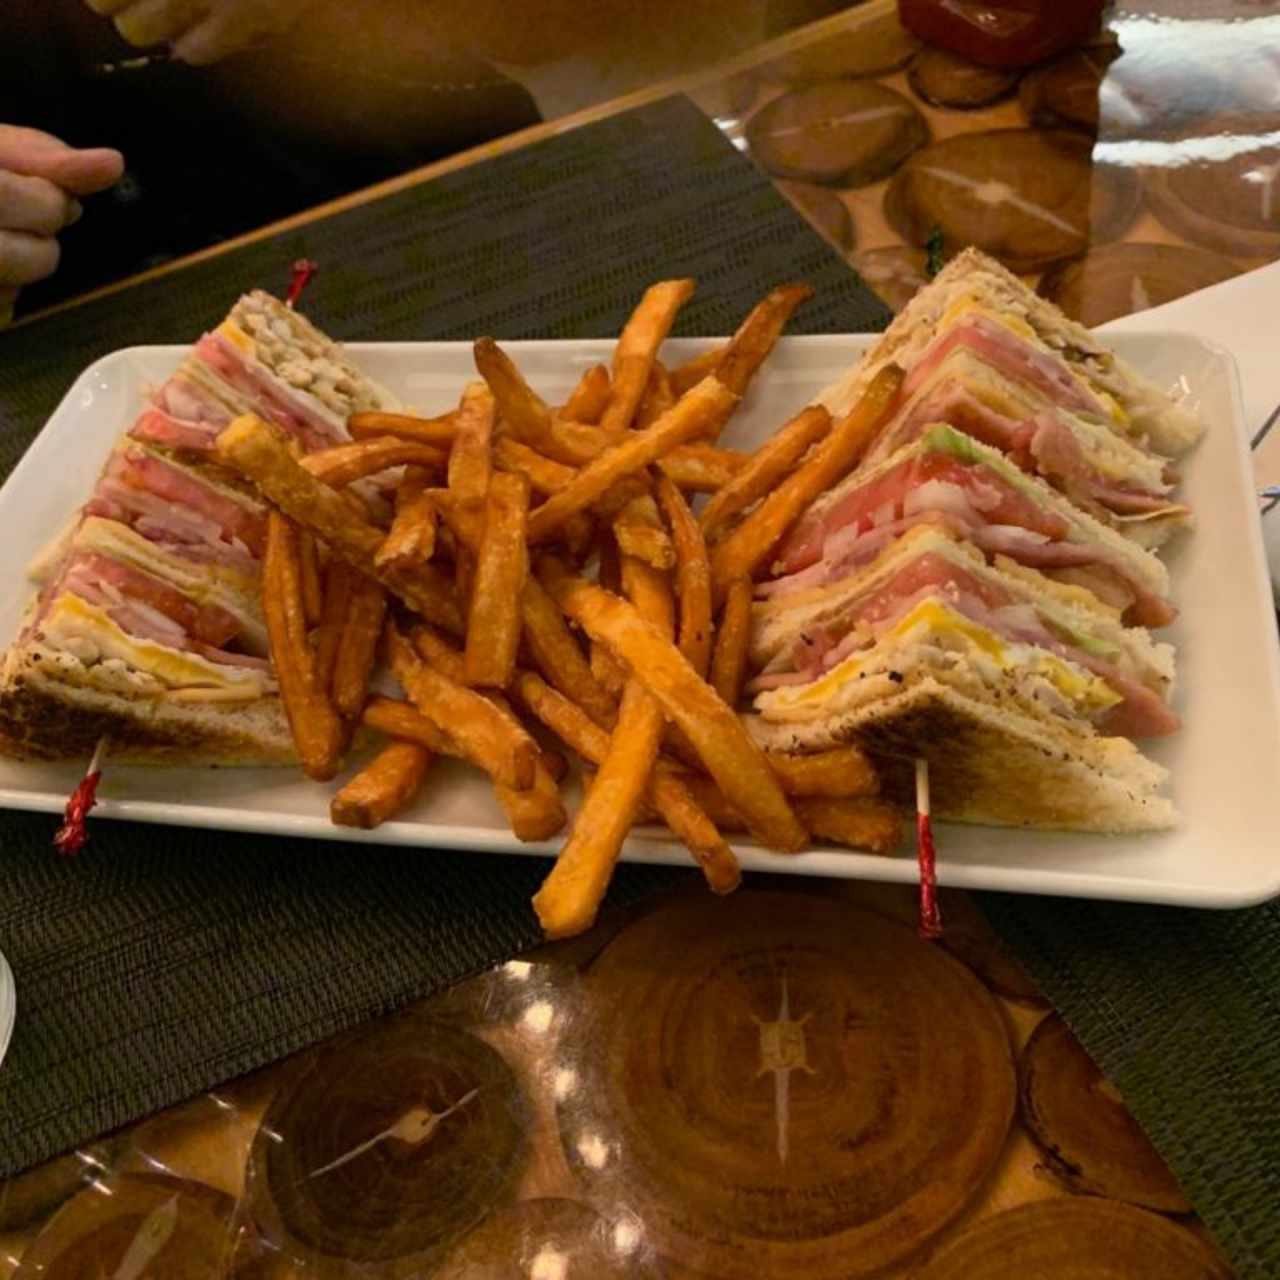 Emparedados - Club sandwich